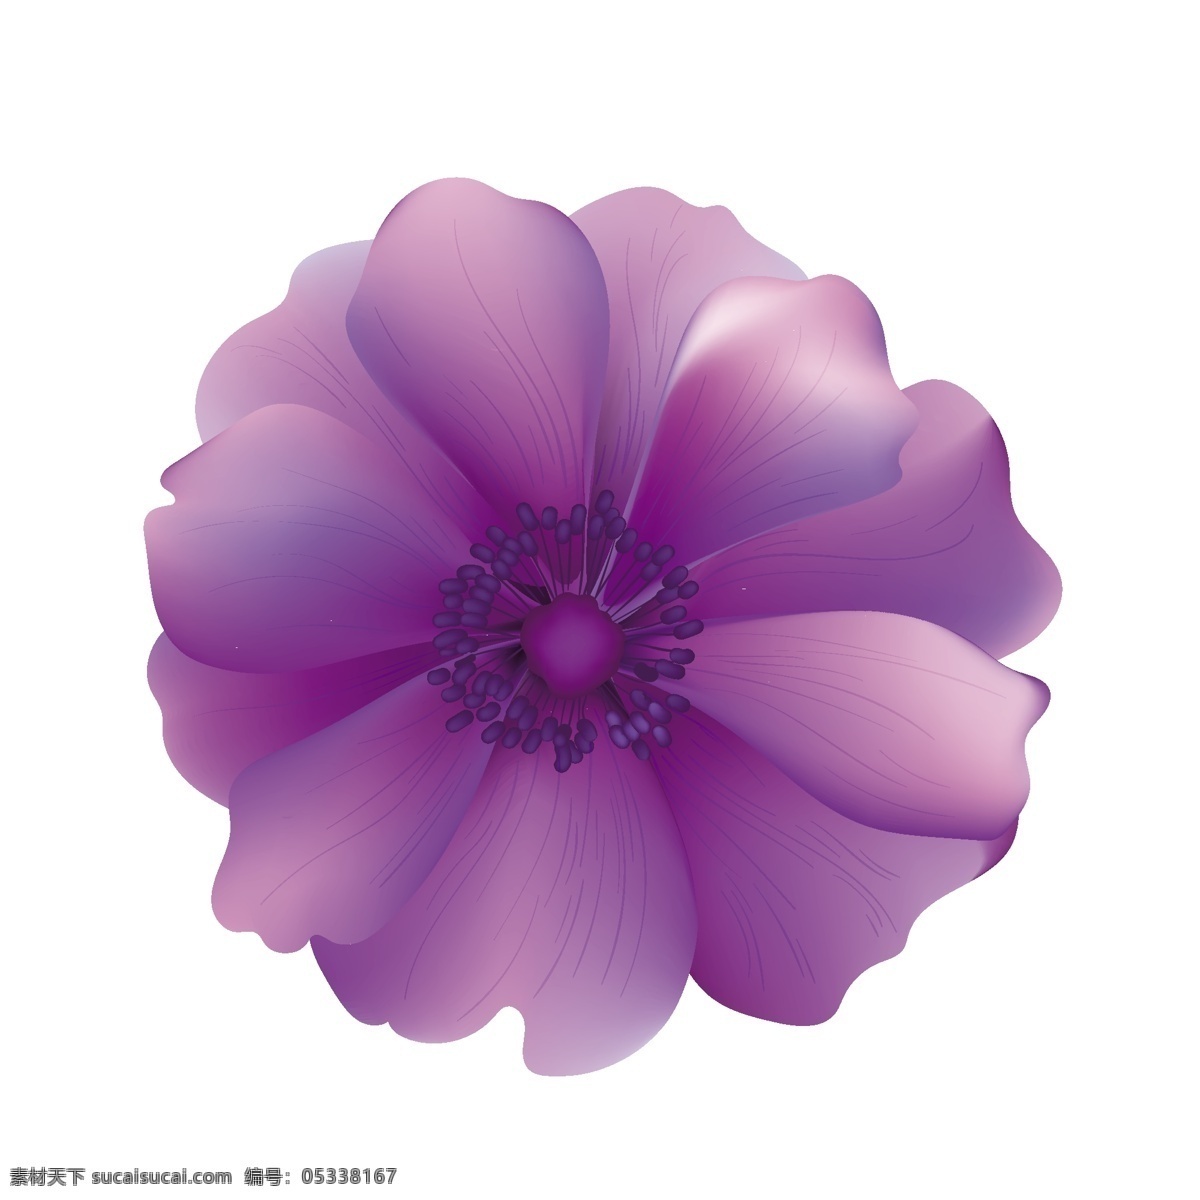 紫色 花朵 矢量 紫色的 紫色的花朵 浪漫 浪漫的花朵 神秘 神秘的花朵 可爱 可爱的花朵